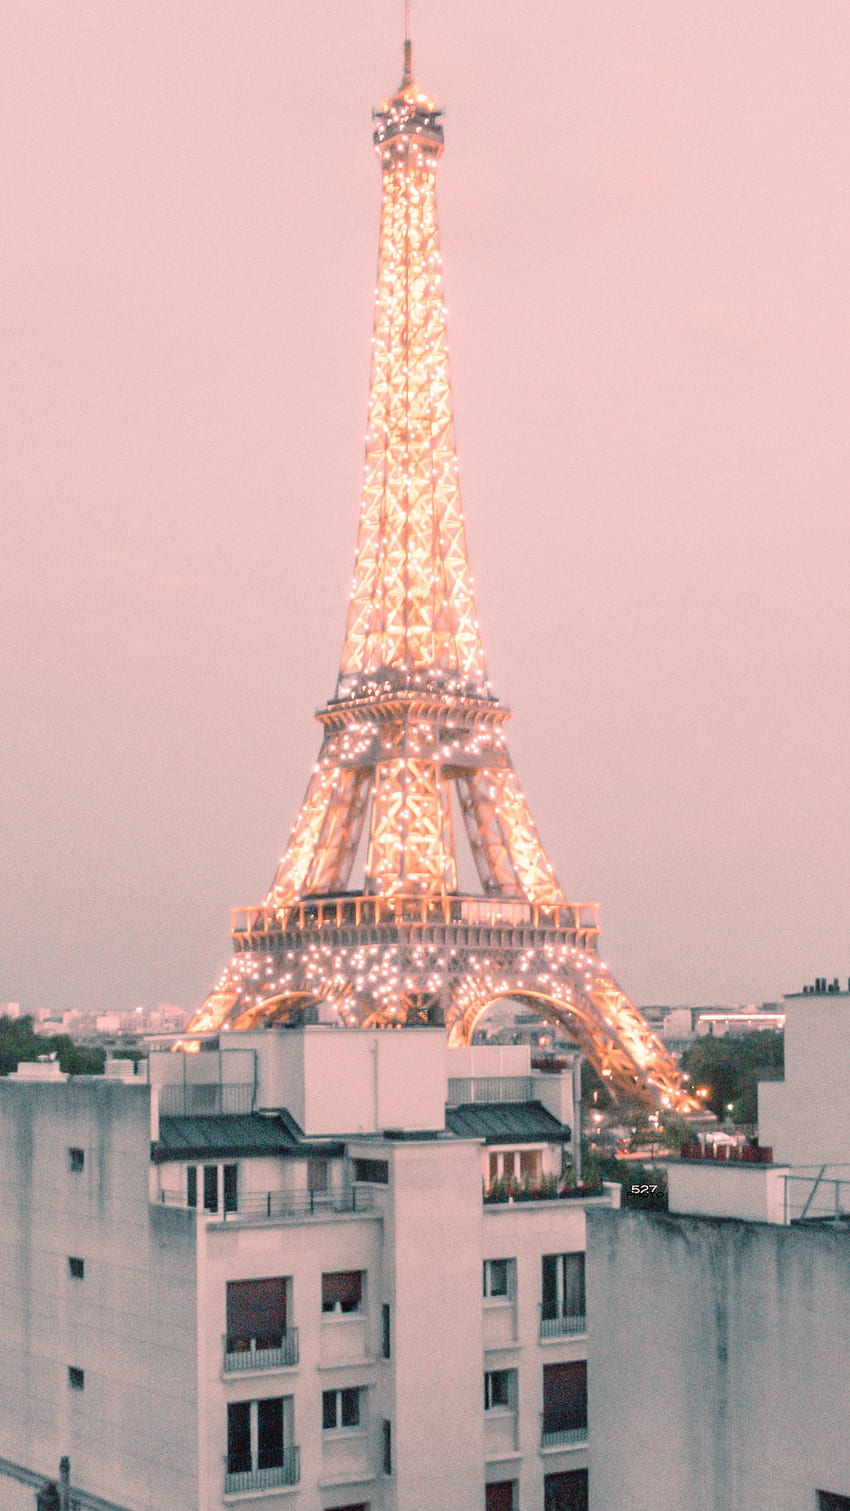 Bức ảnh nền Eiffel đẹp lung linh này sẽ làm cho bạn muốn nghĩ đến Paris và tìm kiếm những trải nghiệm tuyệt vời tại nơi đây. Chắc chắn sẽ khiến bạn ghiền nhìn vào màn hình, cảm nhận những cảm xúc tuyệt vời và mong muốn trở thành một phần của thế giới quyến rũ này.